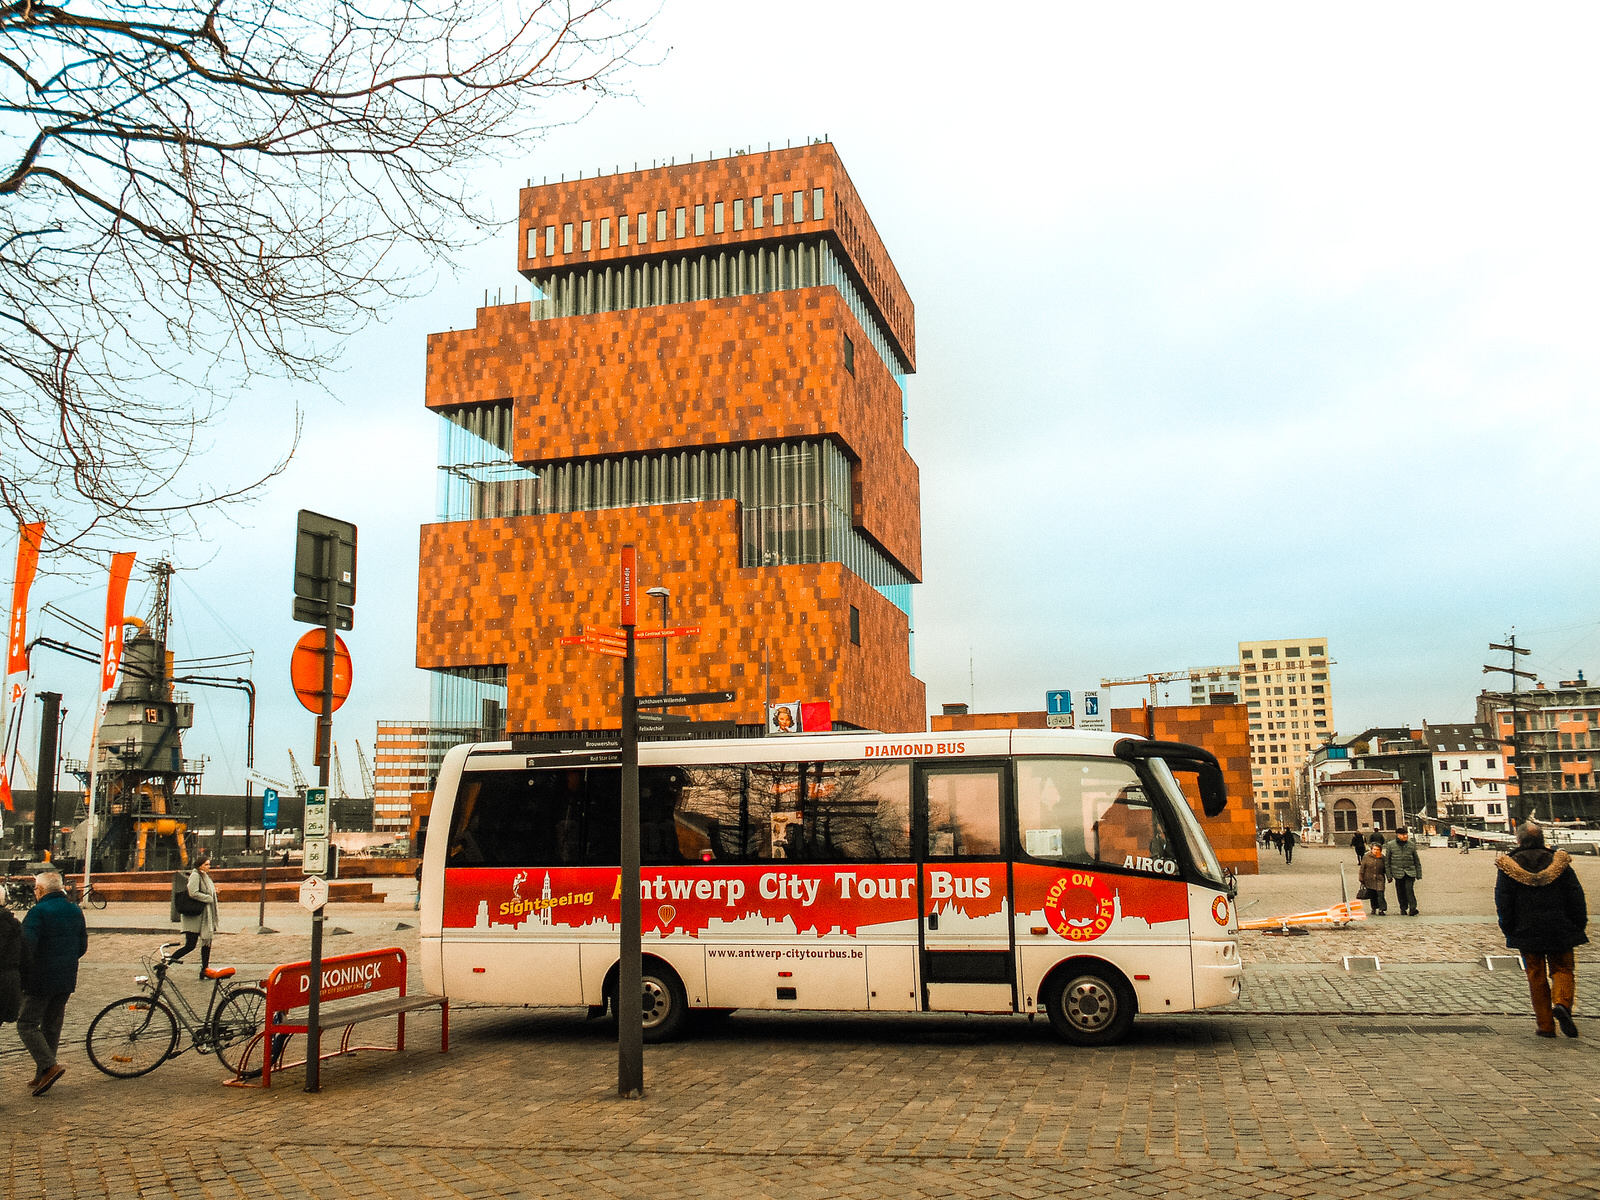 City tour bus: Hop on hop off